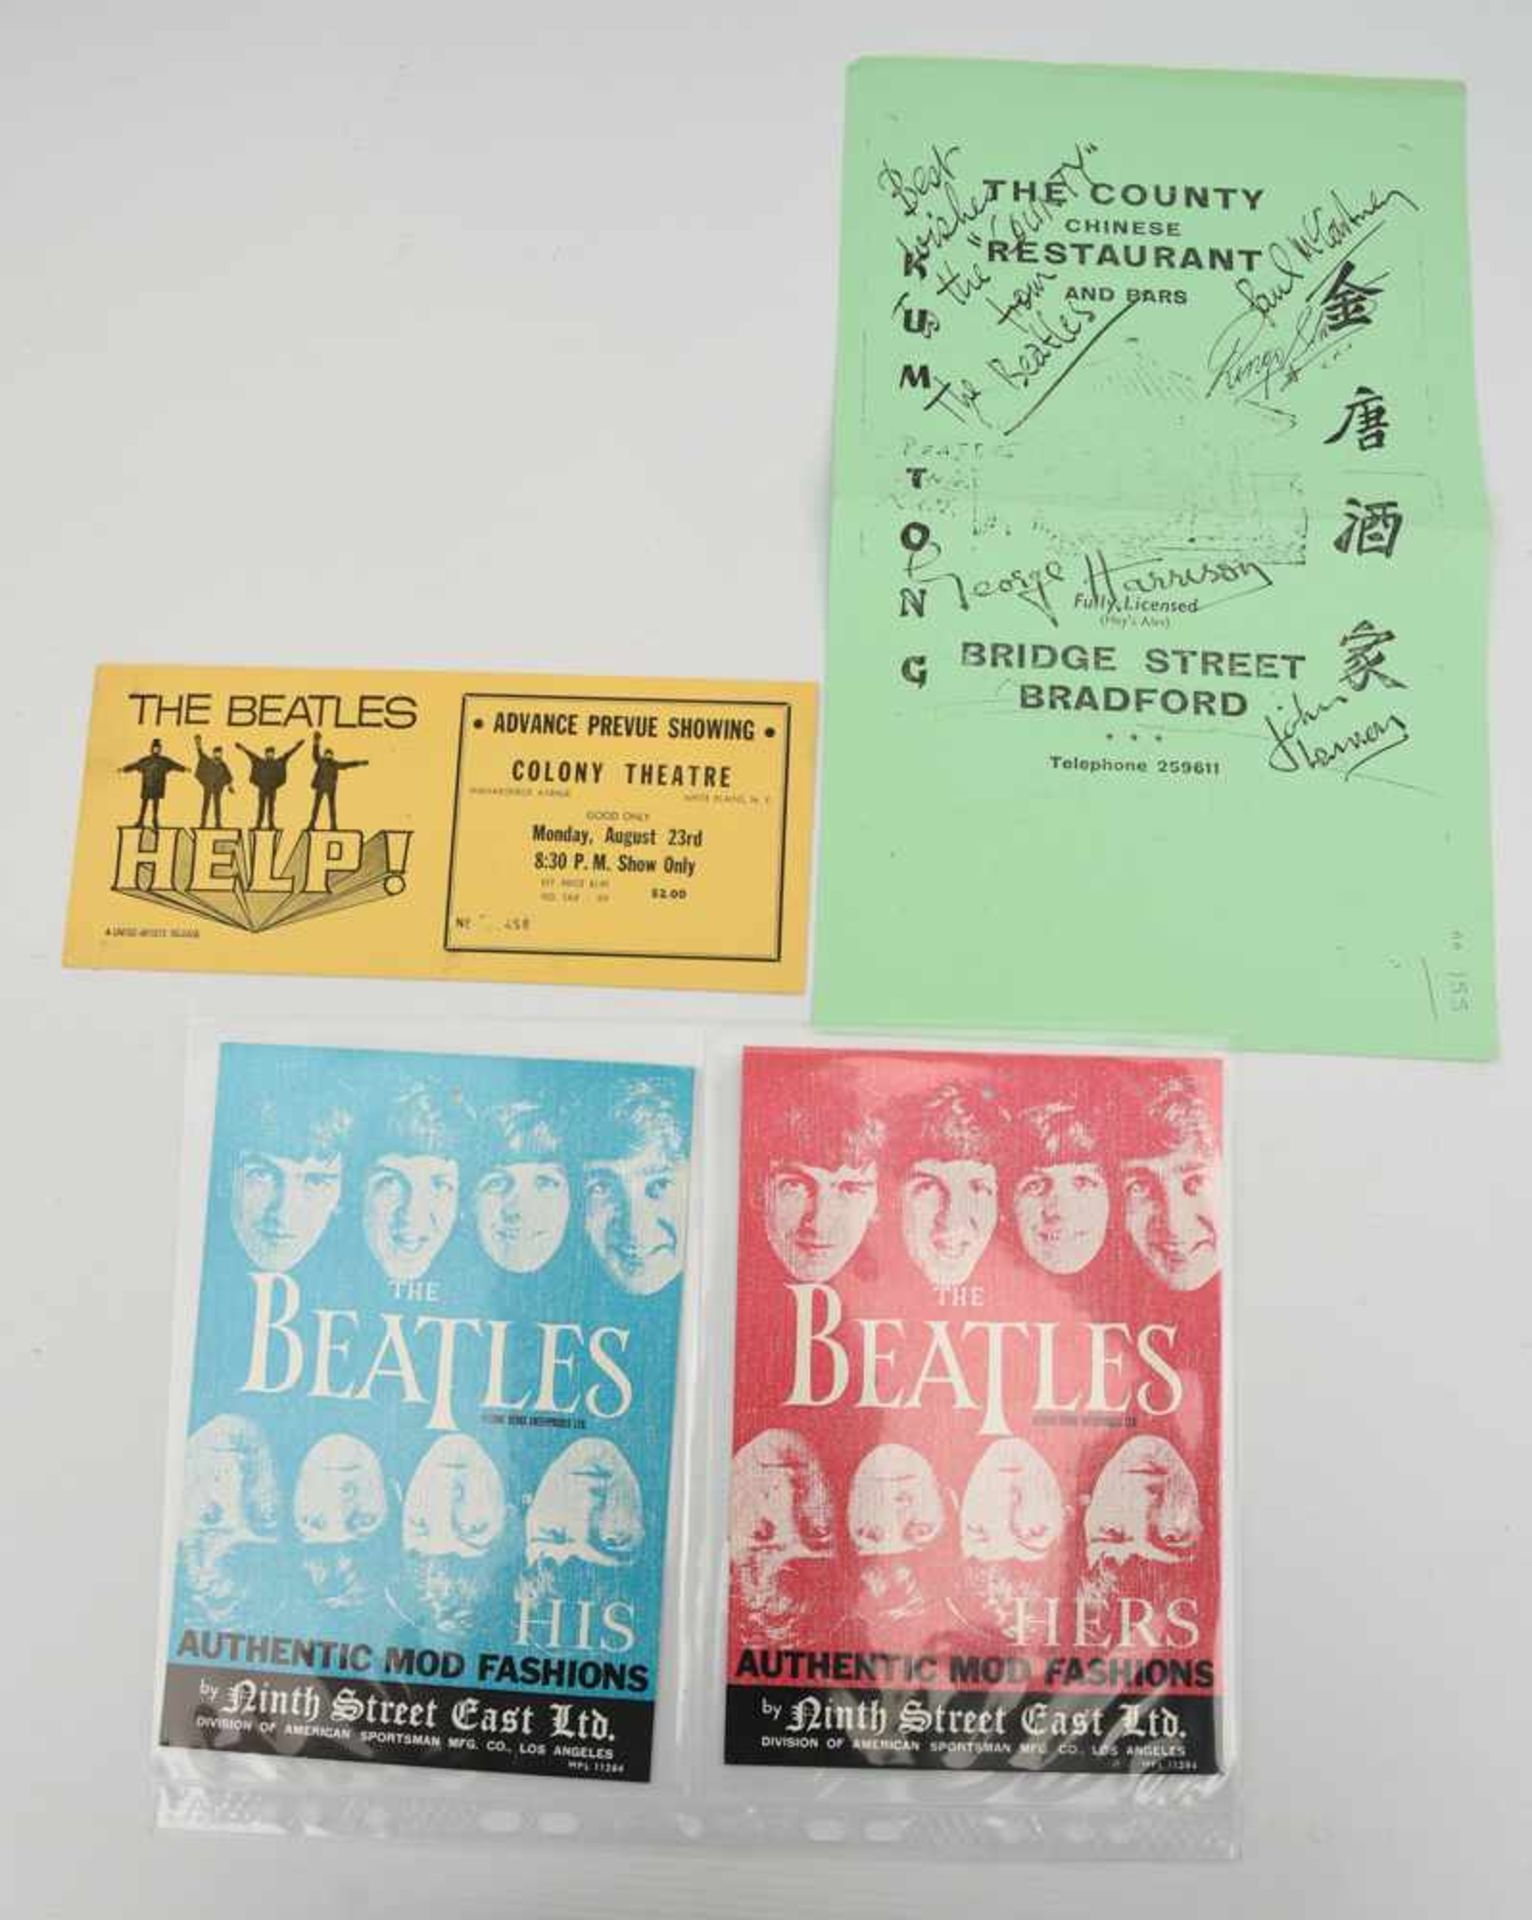 THE BEATLES- MEMORABILIA 10: Werbekarten & Eintrittskarte, USA/UK 1965/1966 Konvolut aus zwei - Bild 2 aus 4